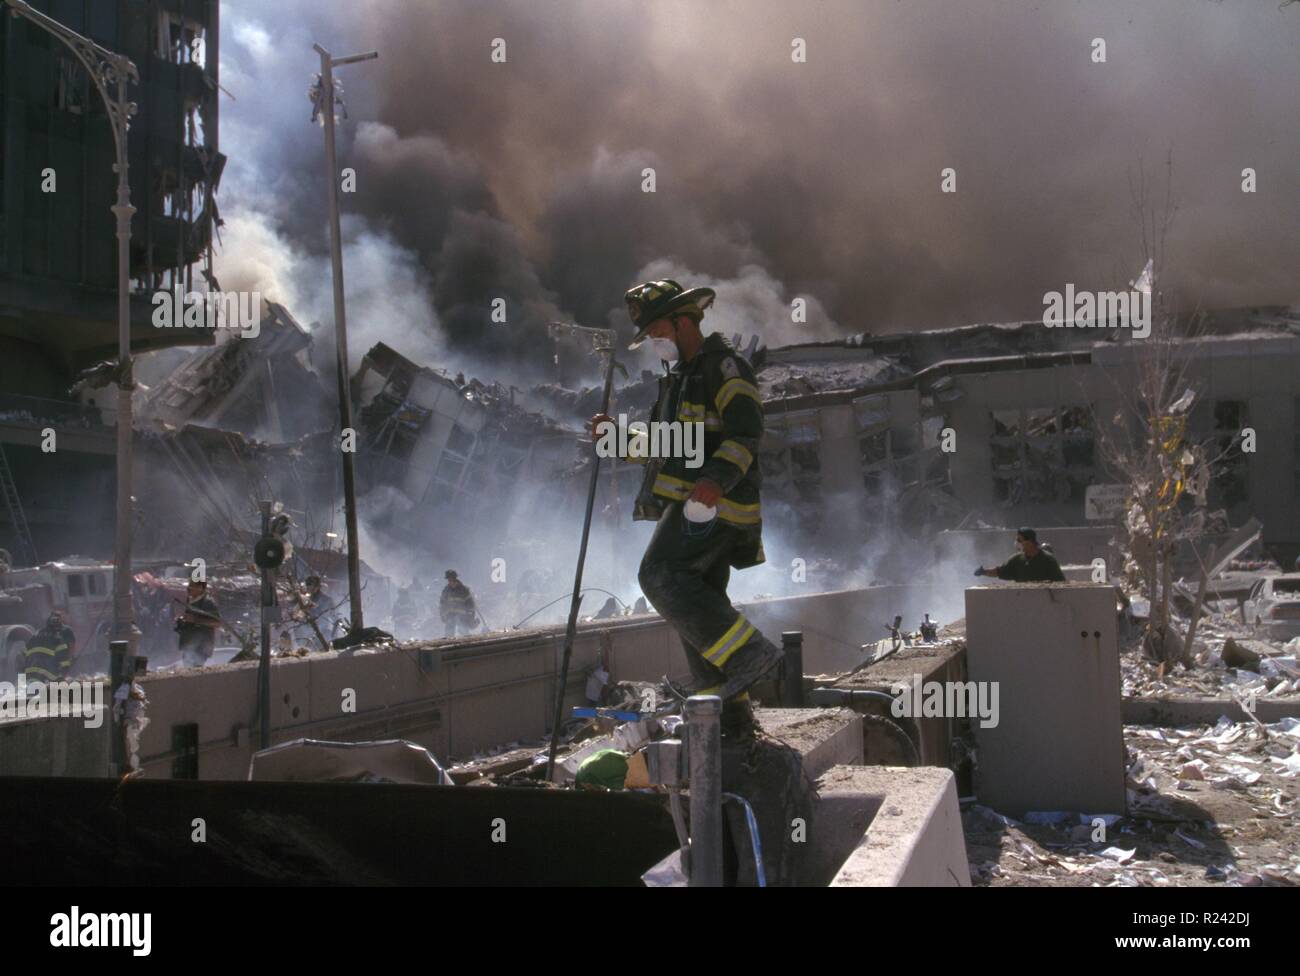 Photographie couleur de pompiers de New York au milieu des décombres du World Trade Center après les attaques du 11 septembre. Datée 2001 Banque D'Images